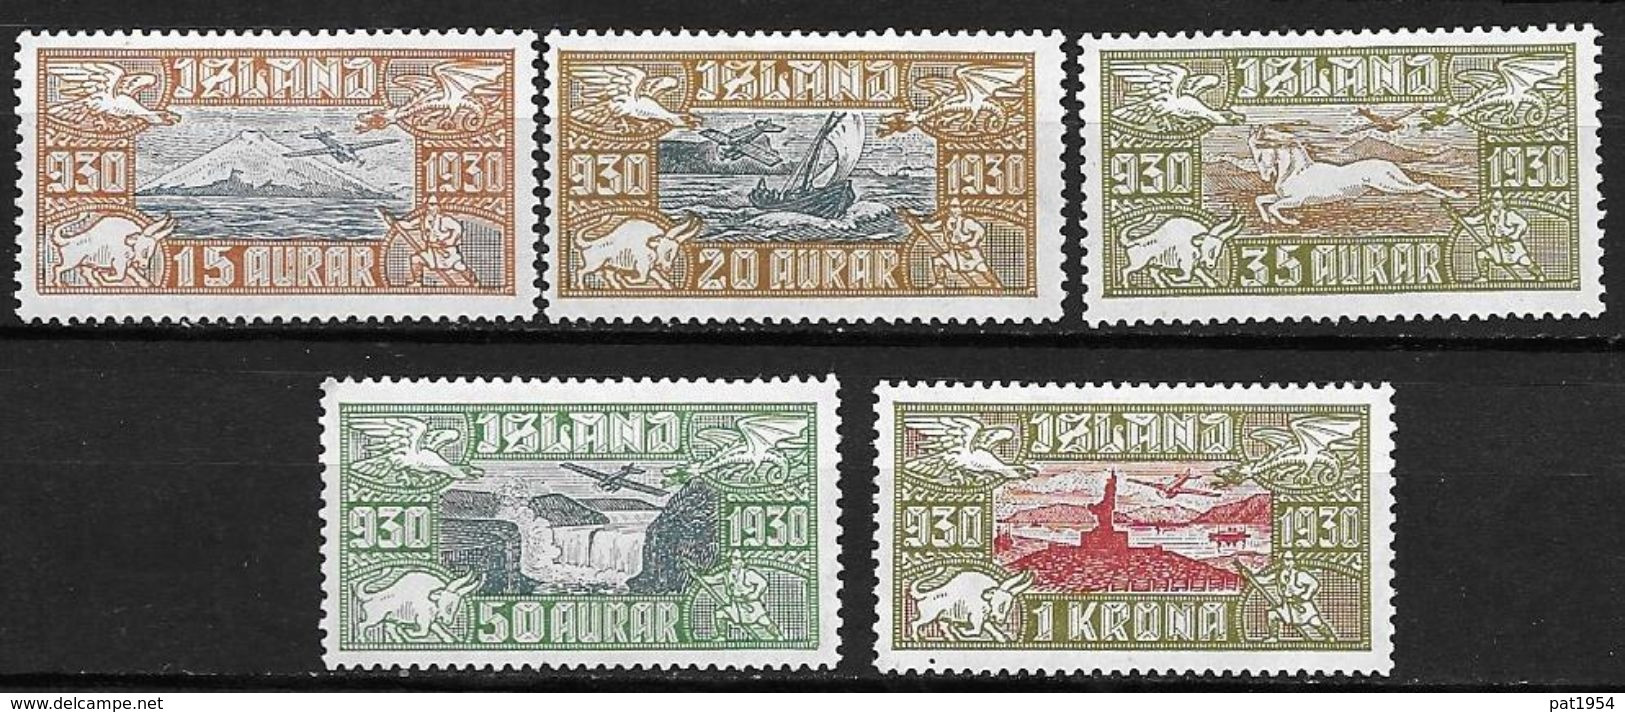 Islande 1930 Poste Aérienne N° 4/8  Neufs * MLH, Cote 235 Euros - Luchtpost